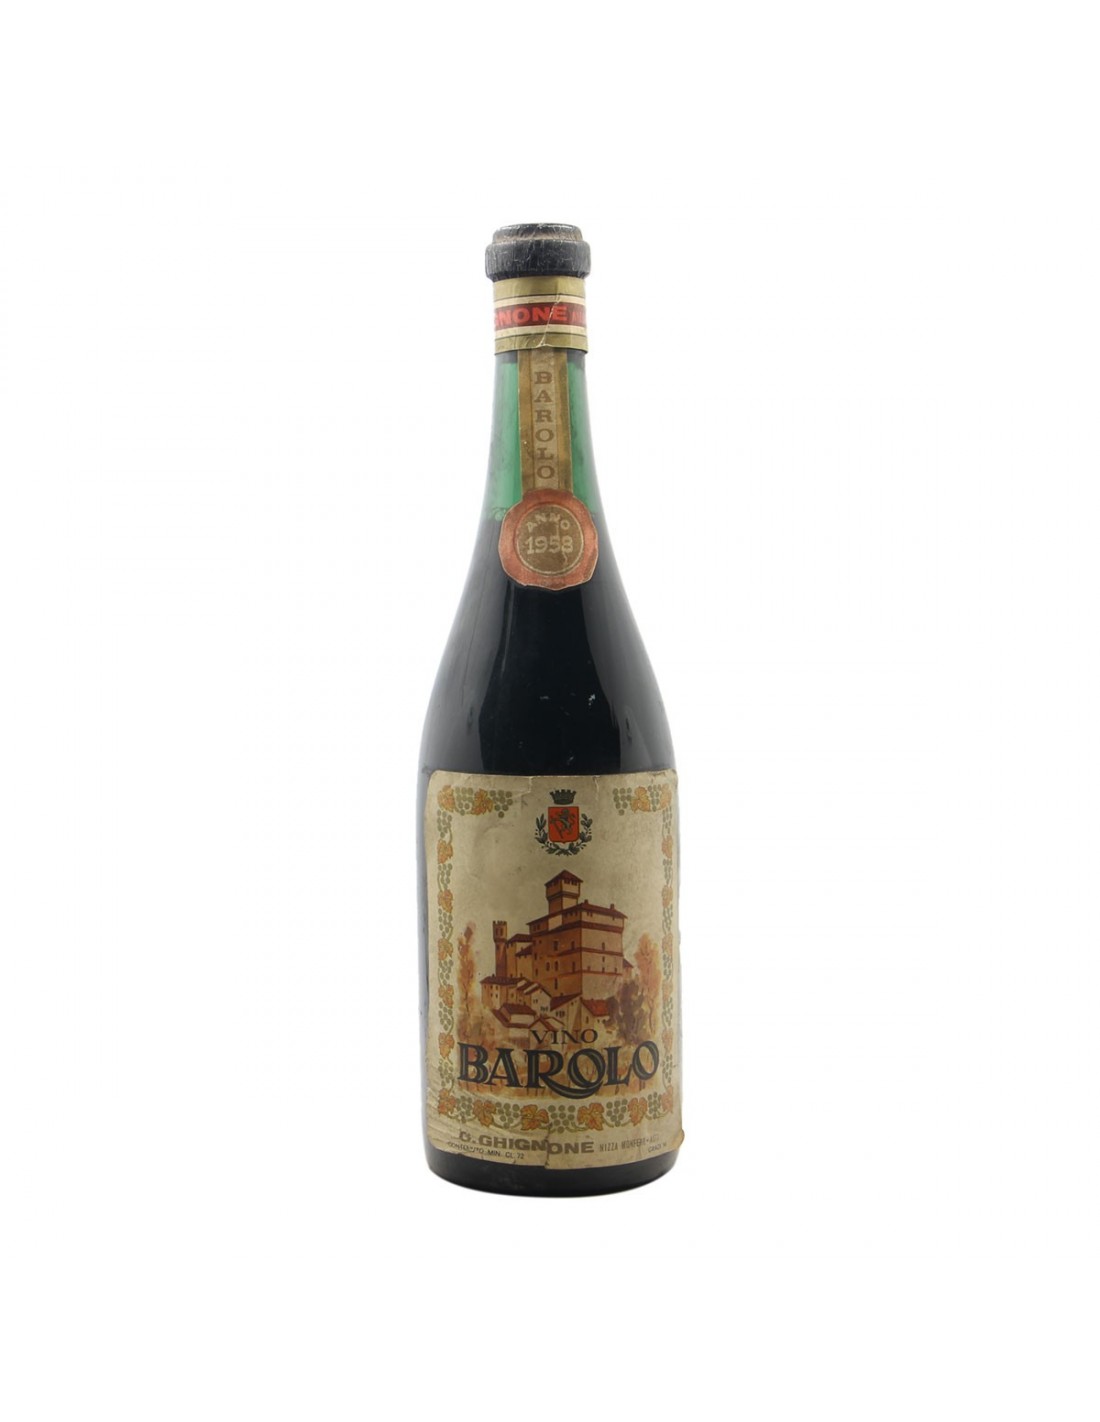 BAROLO 1958 GHIGNONE Grandi Bottiglie